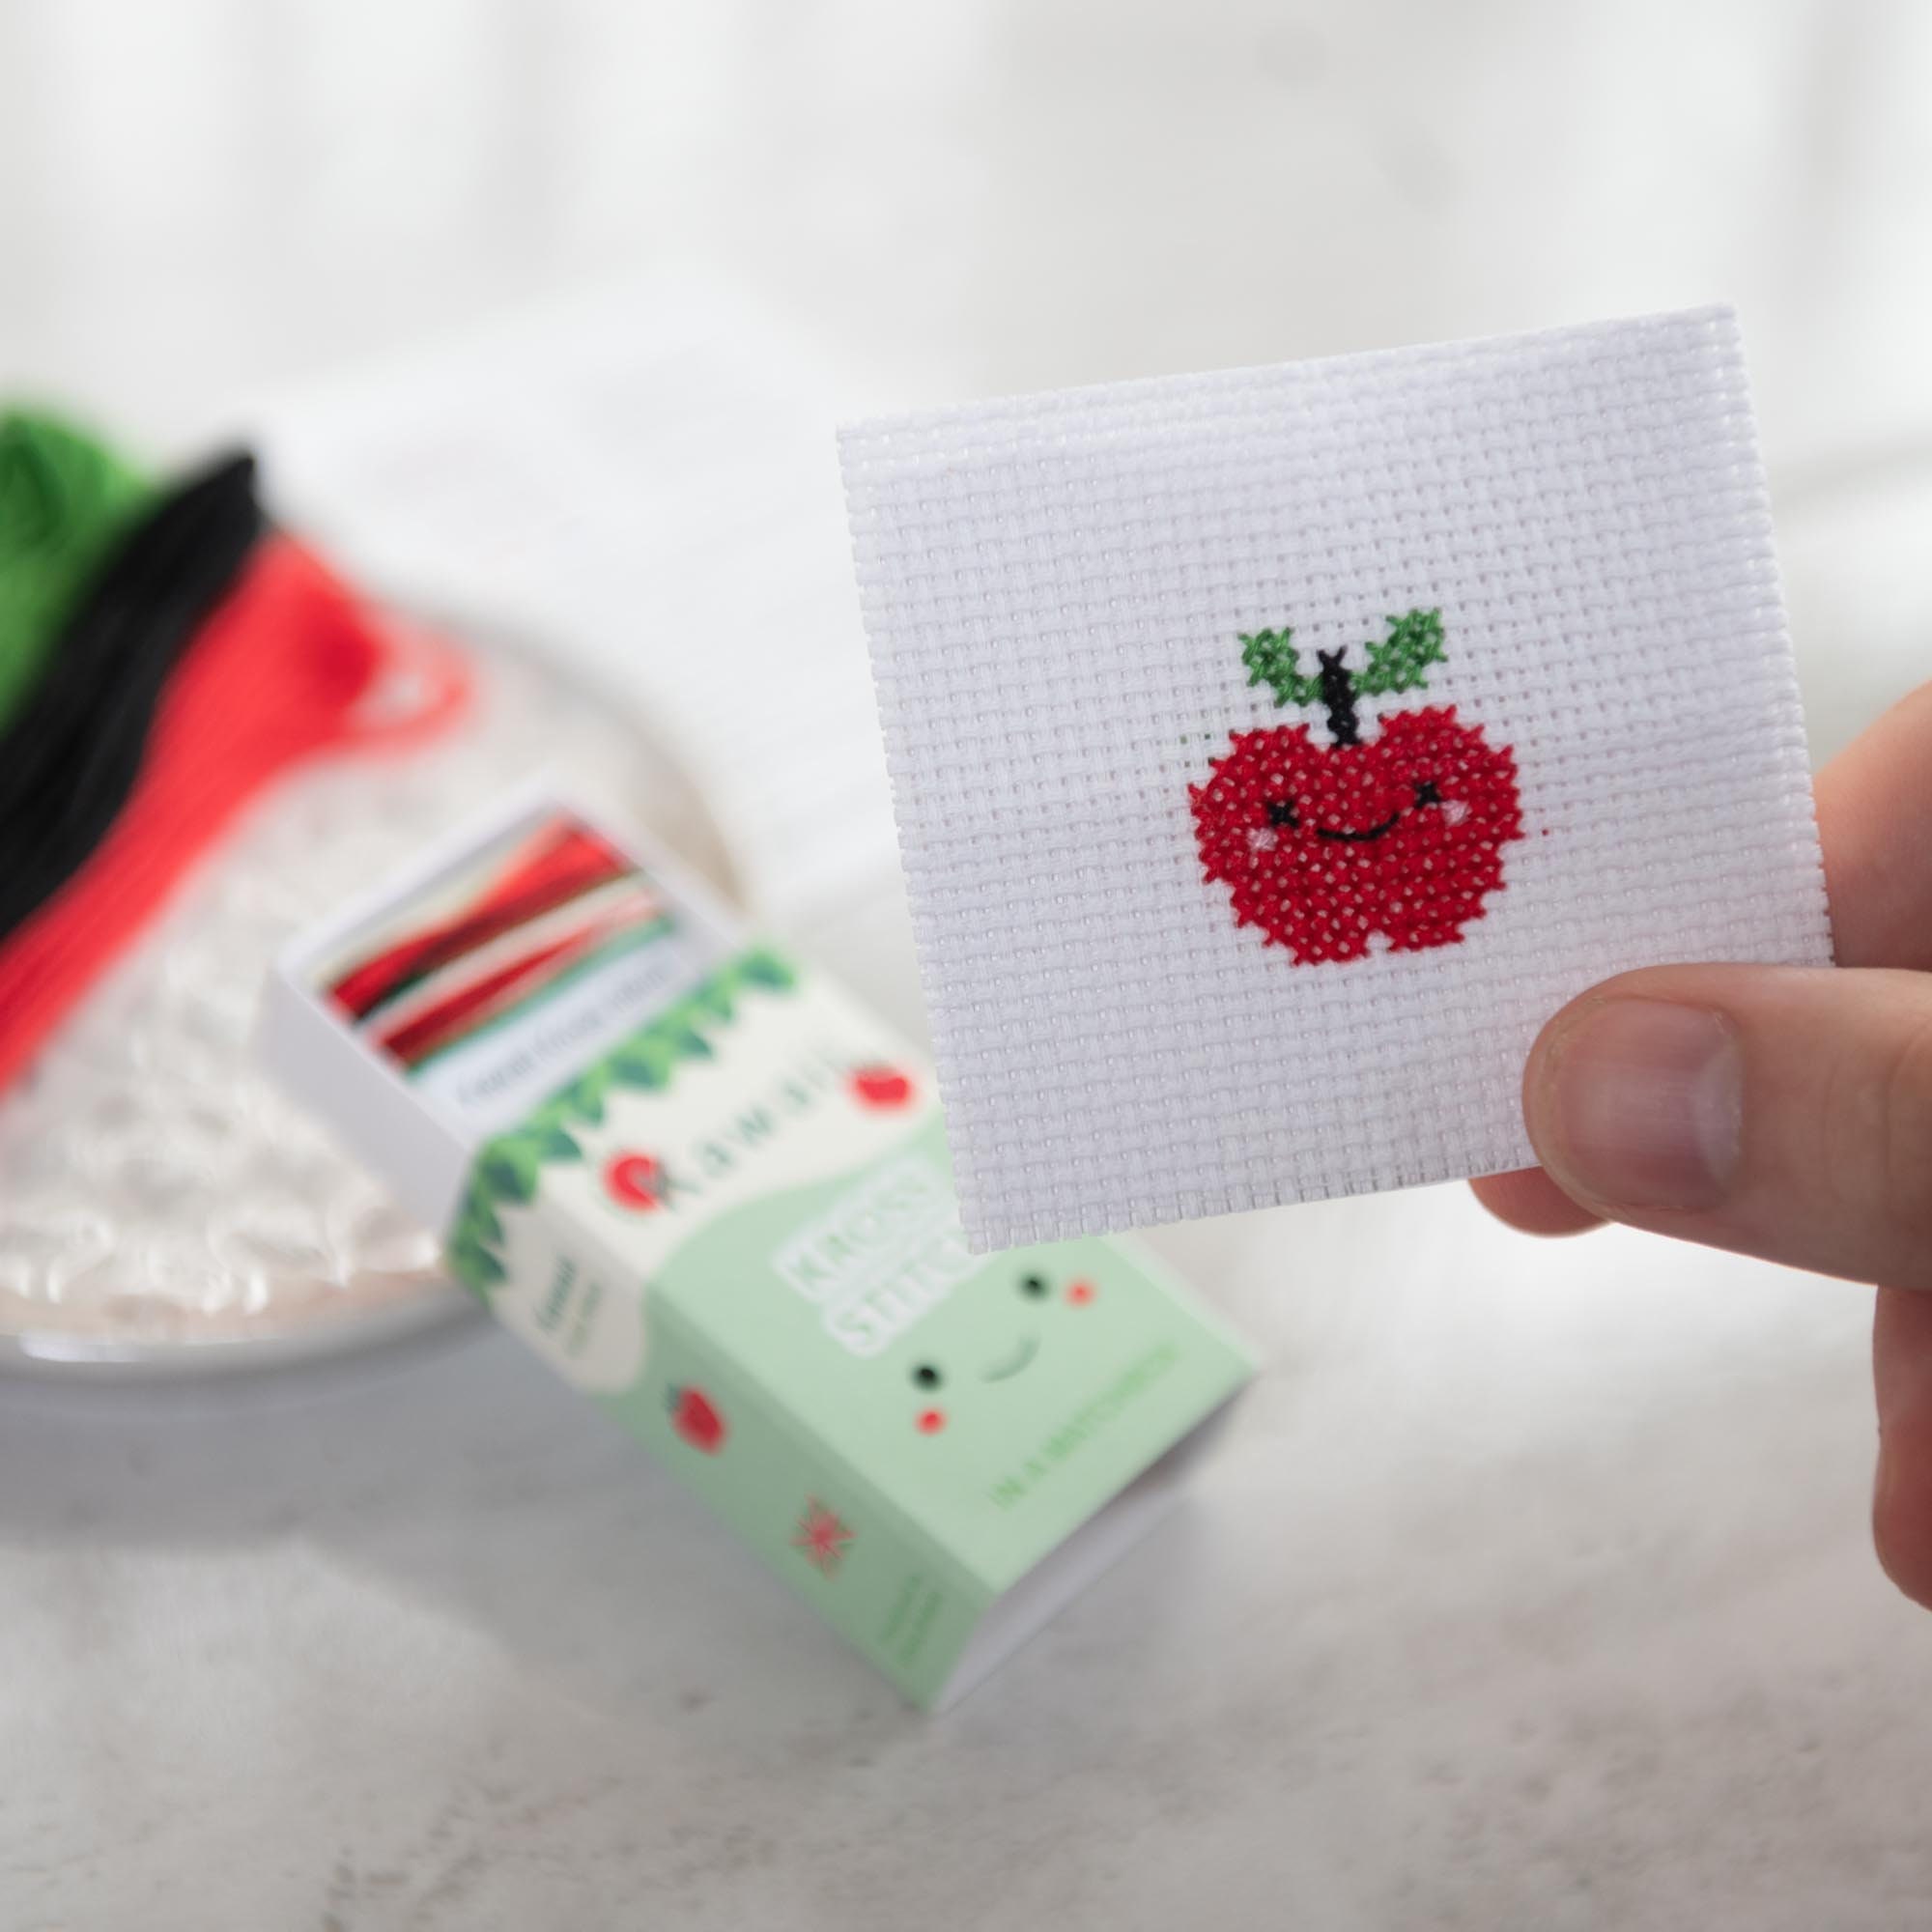 Kawaii Pear Mini Cross Stitch Kit, Kawaii Cross Stitch Kit, Gifts for Kids,  Cute Modern Cross Stitch Kit, Best Friend Gift 